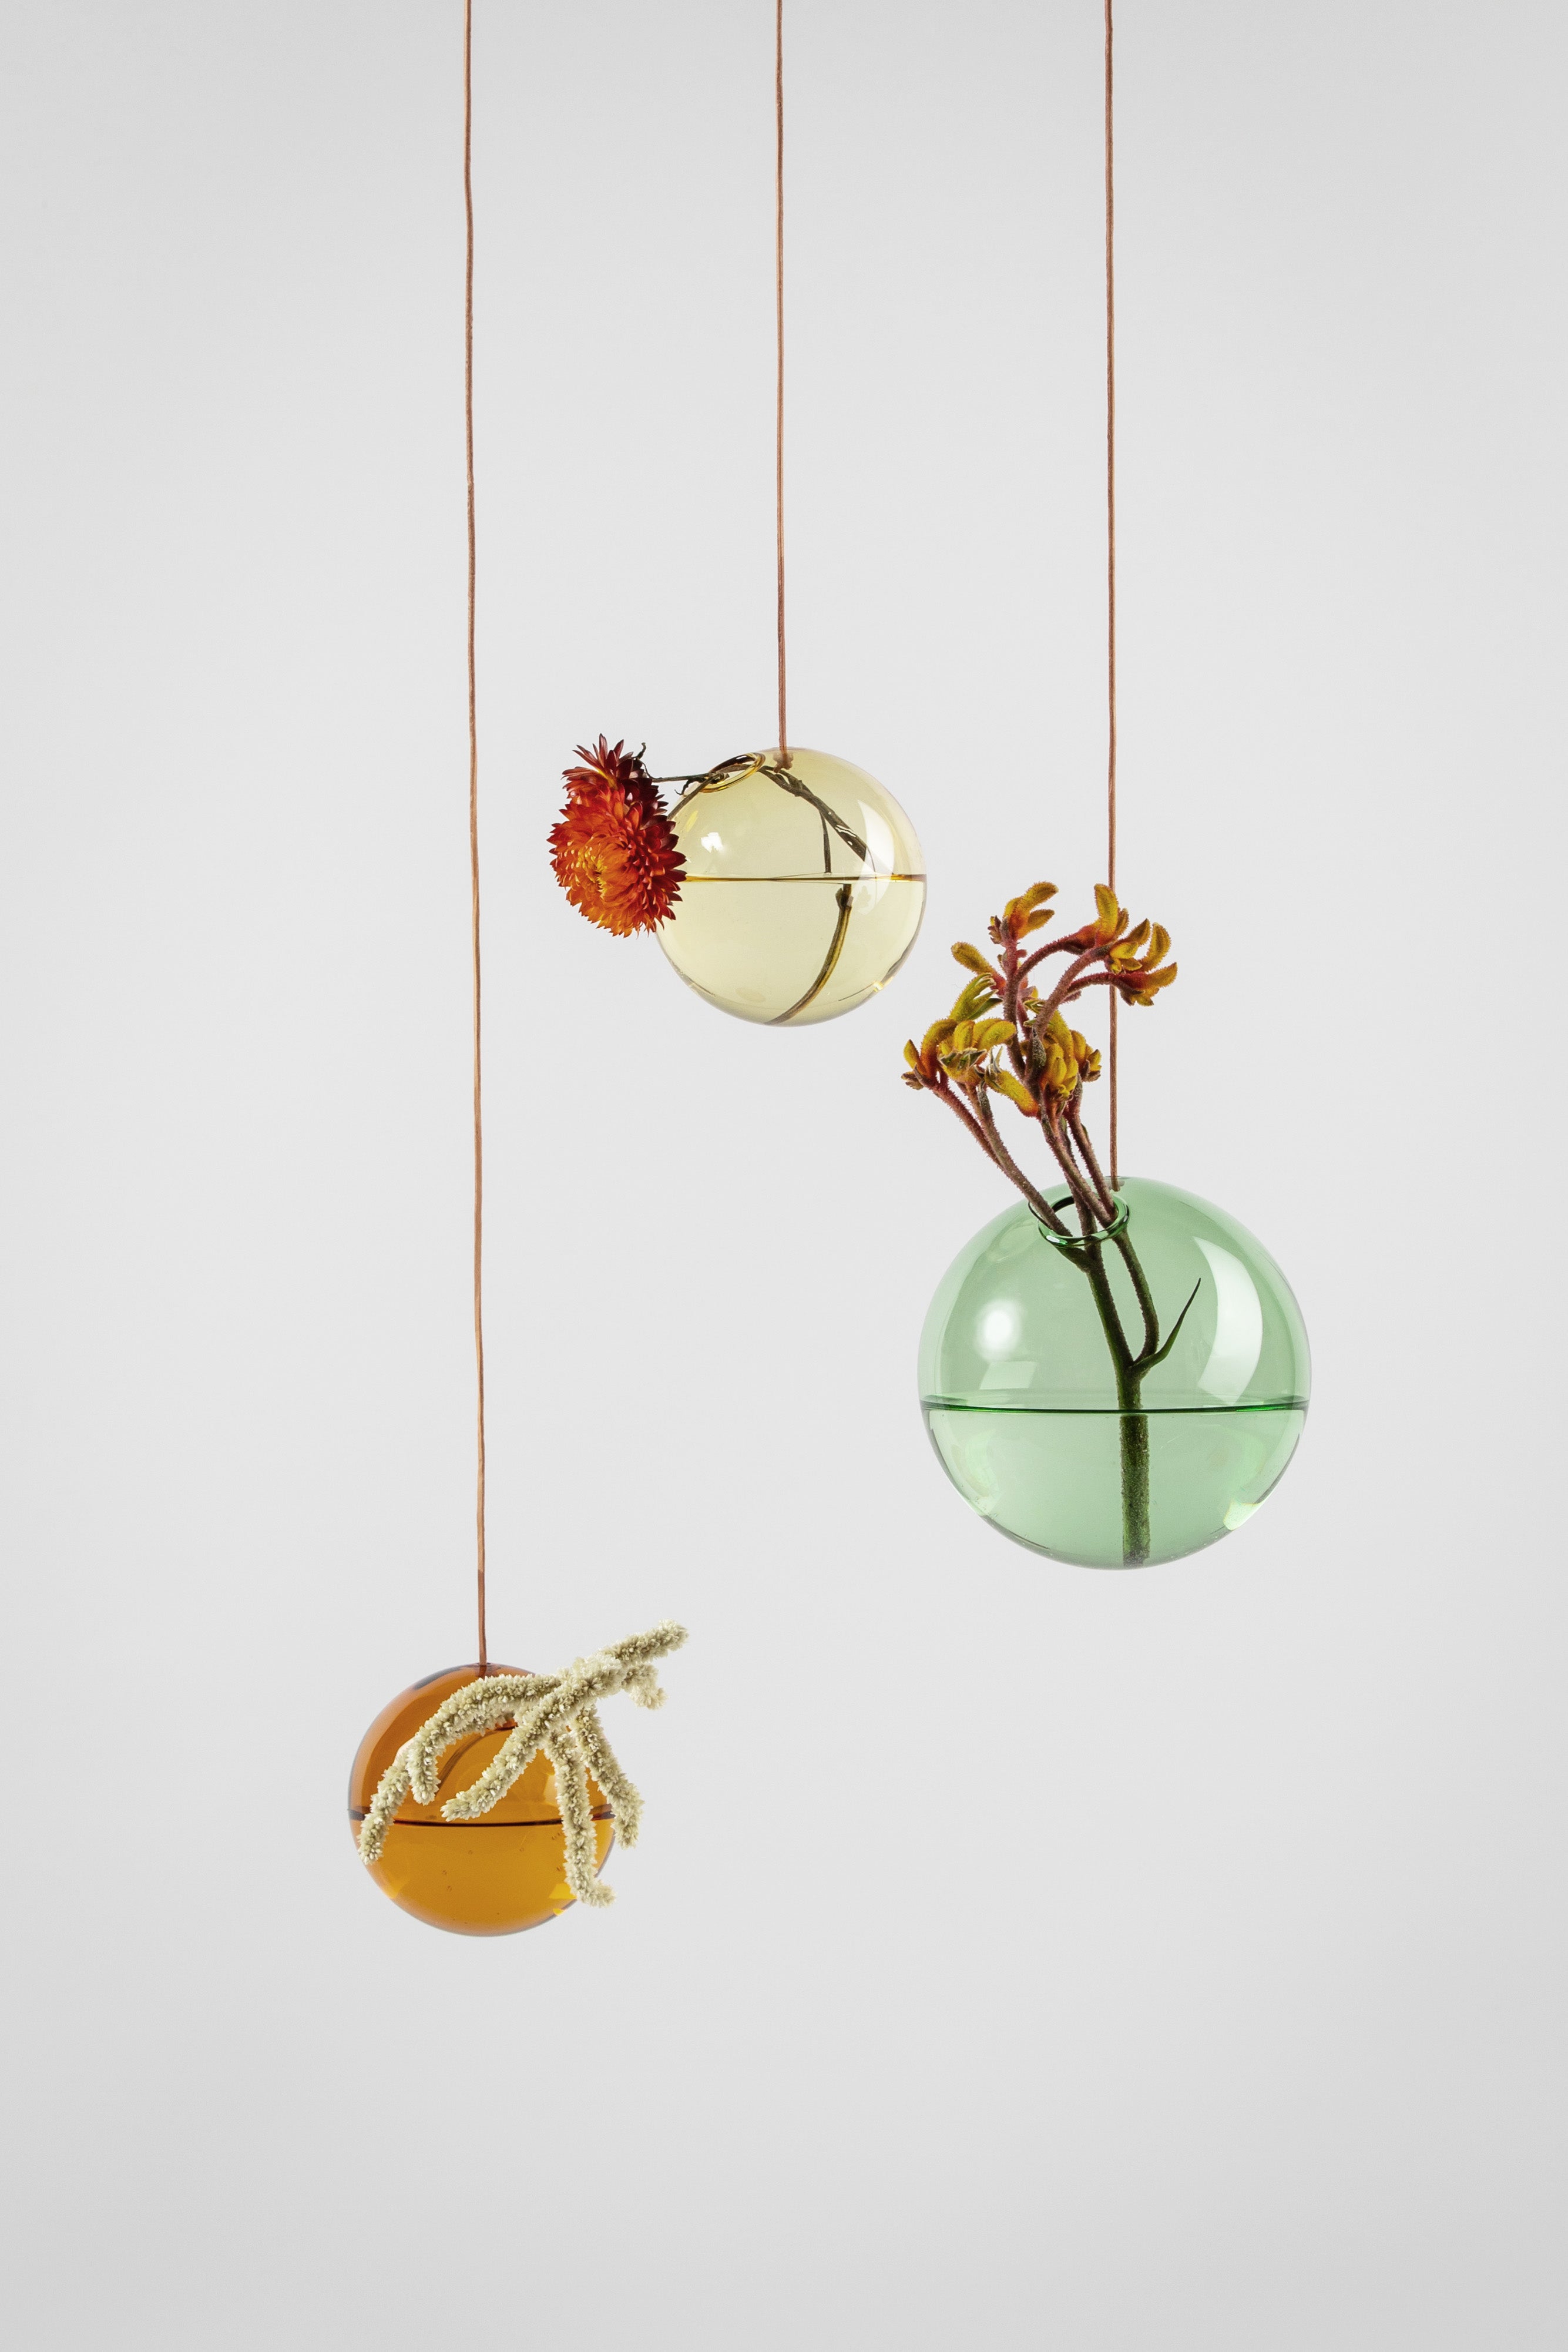 Studio über hängende Blumenblasen Vase Medium, grün